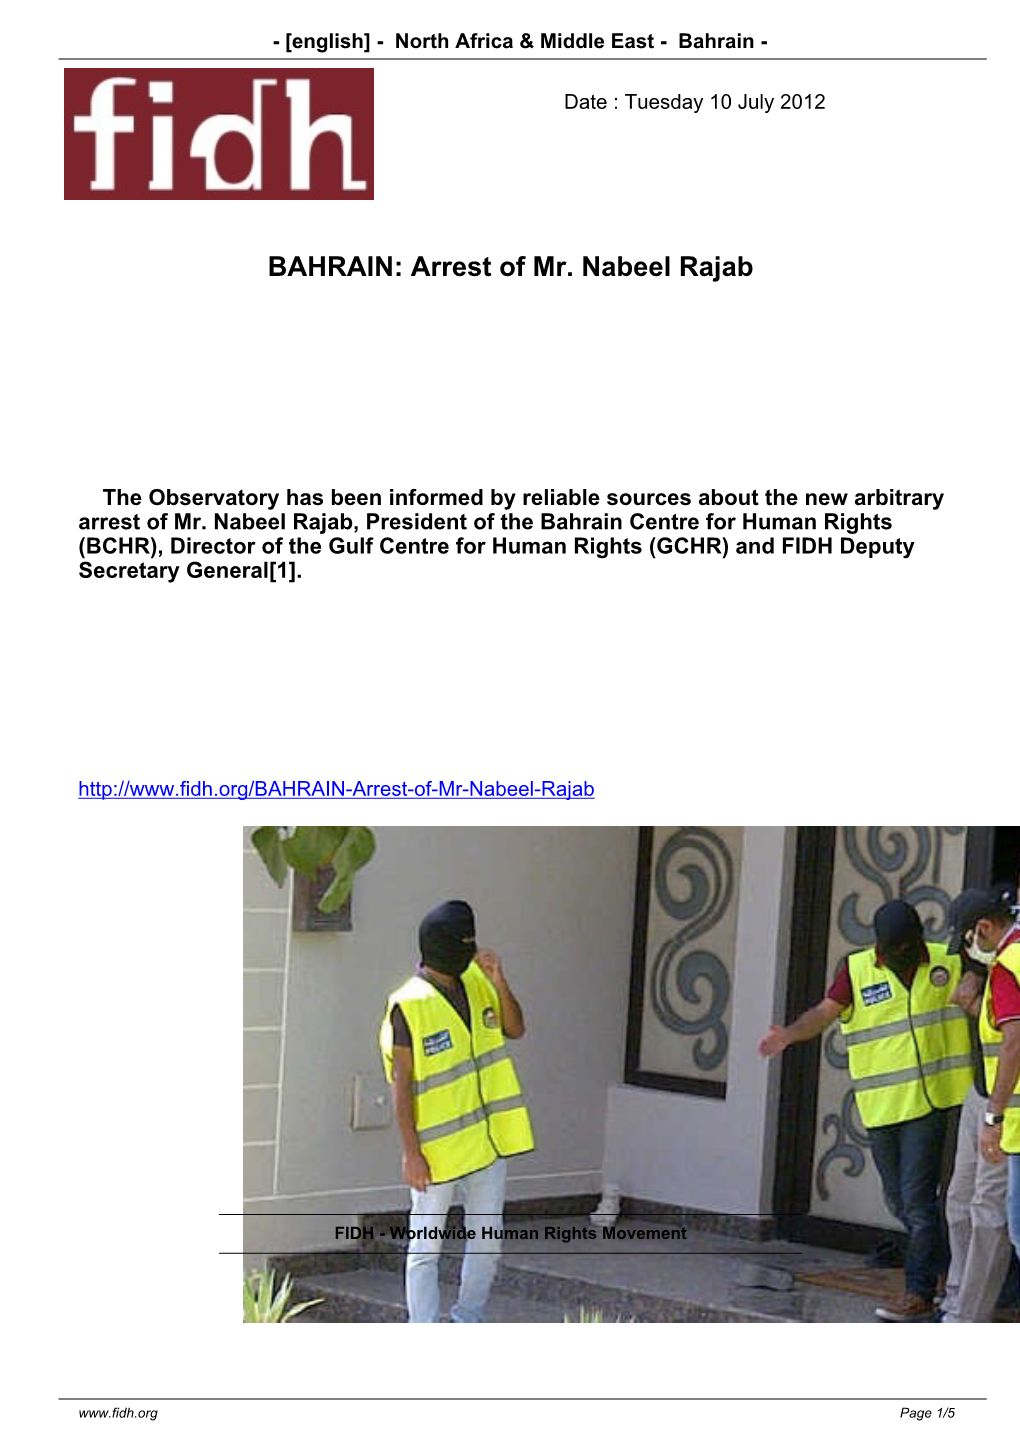 Arrest of Mr. Nabeel Rajab